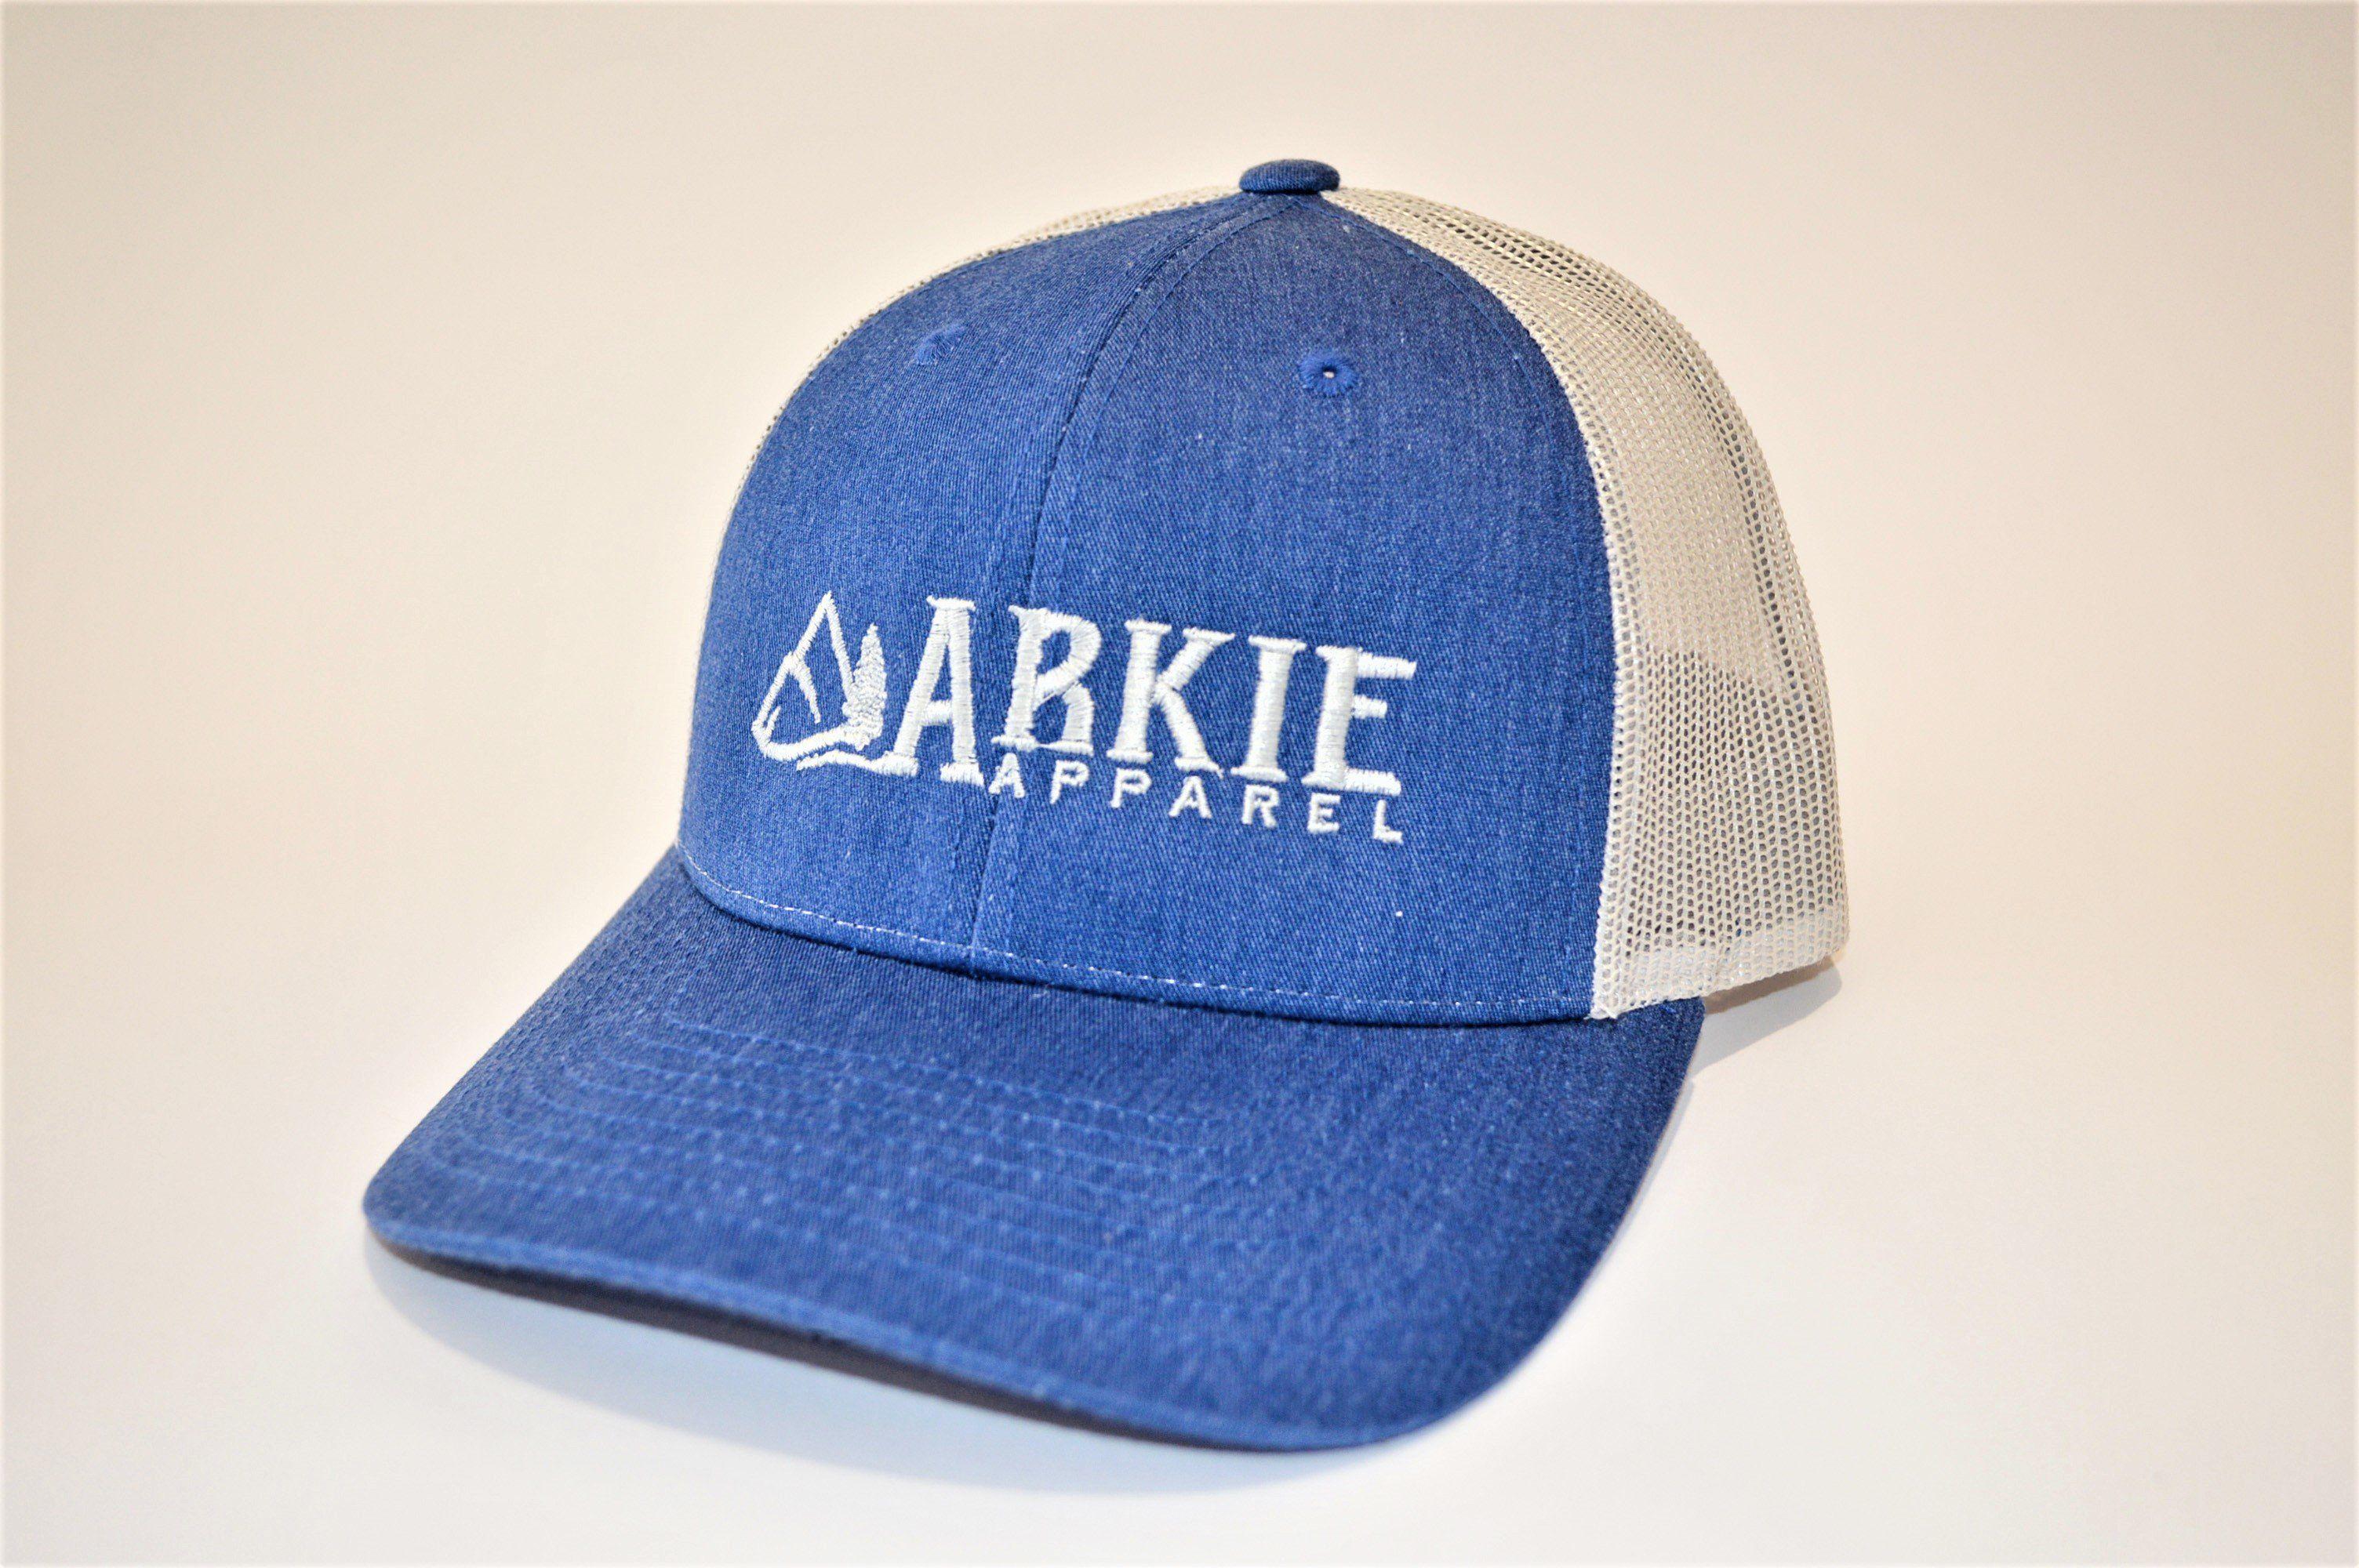 Light Gray Logo - Hats - Arkie Apparel